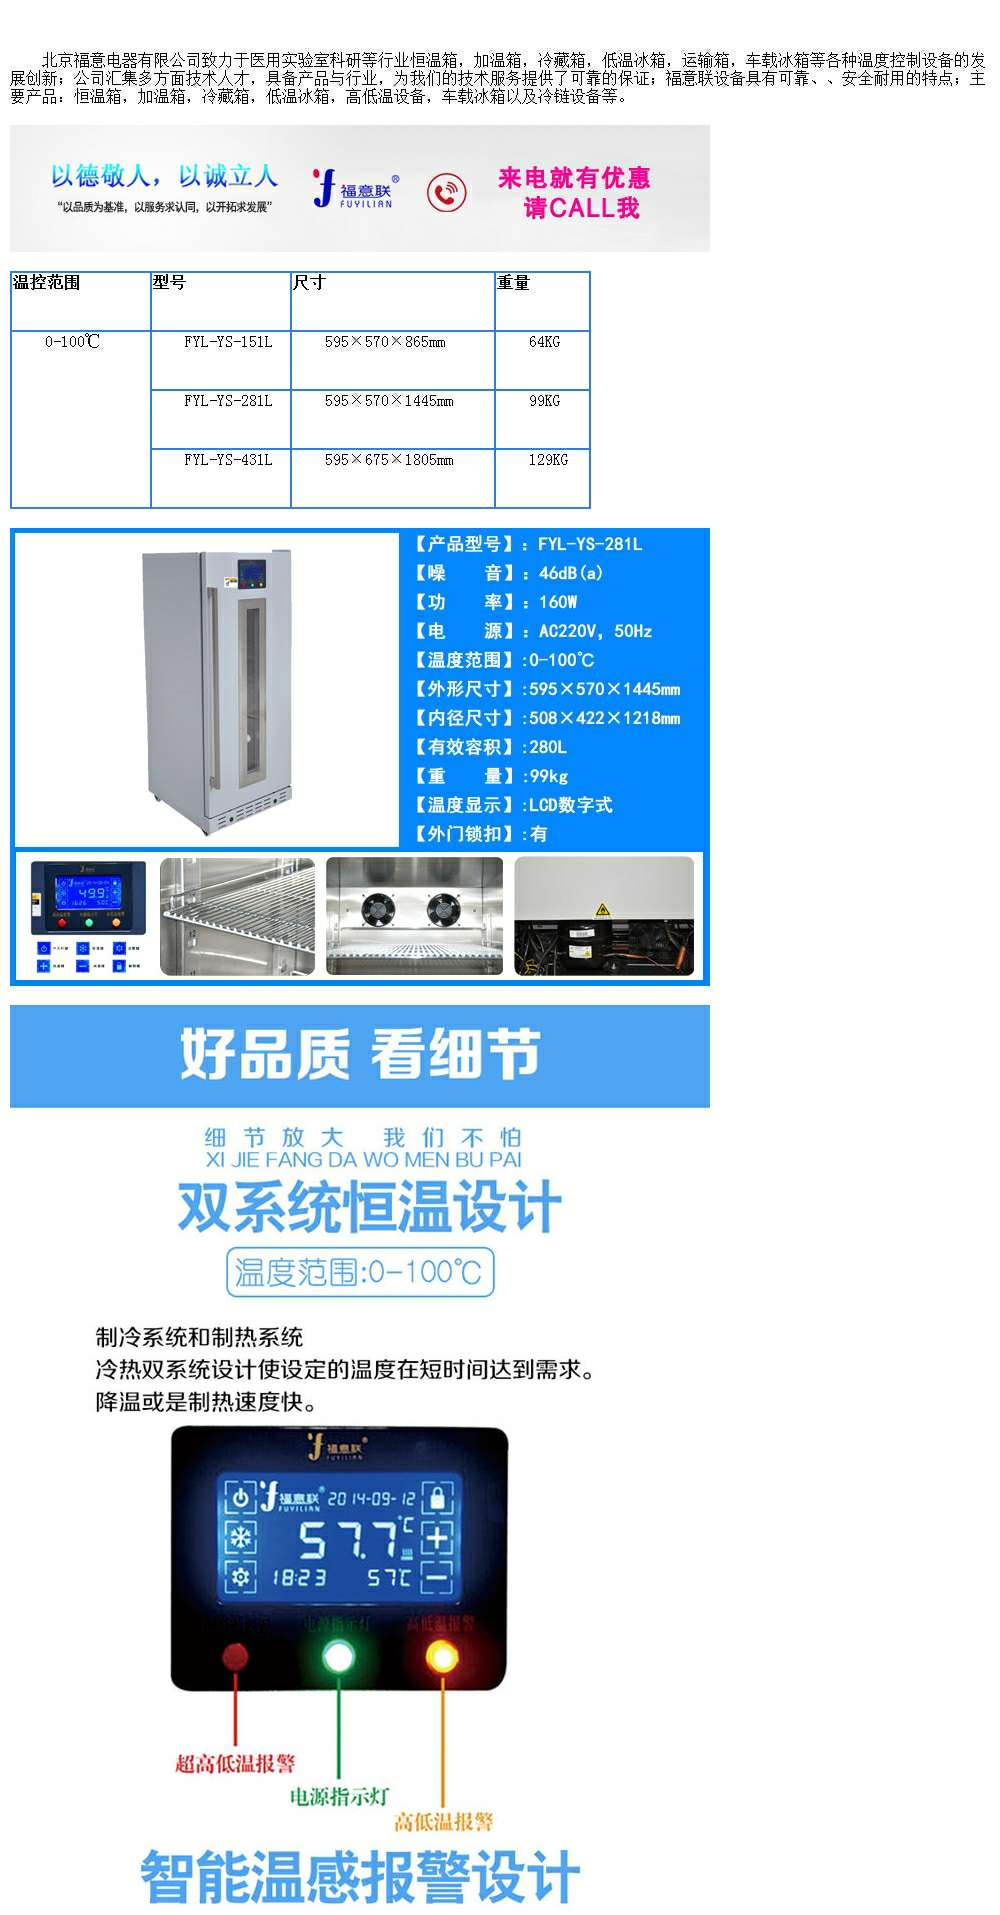 品冷藏柜FYL-YS-280L温度2-48度温度可调控